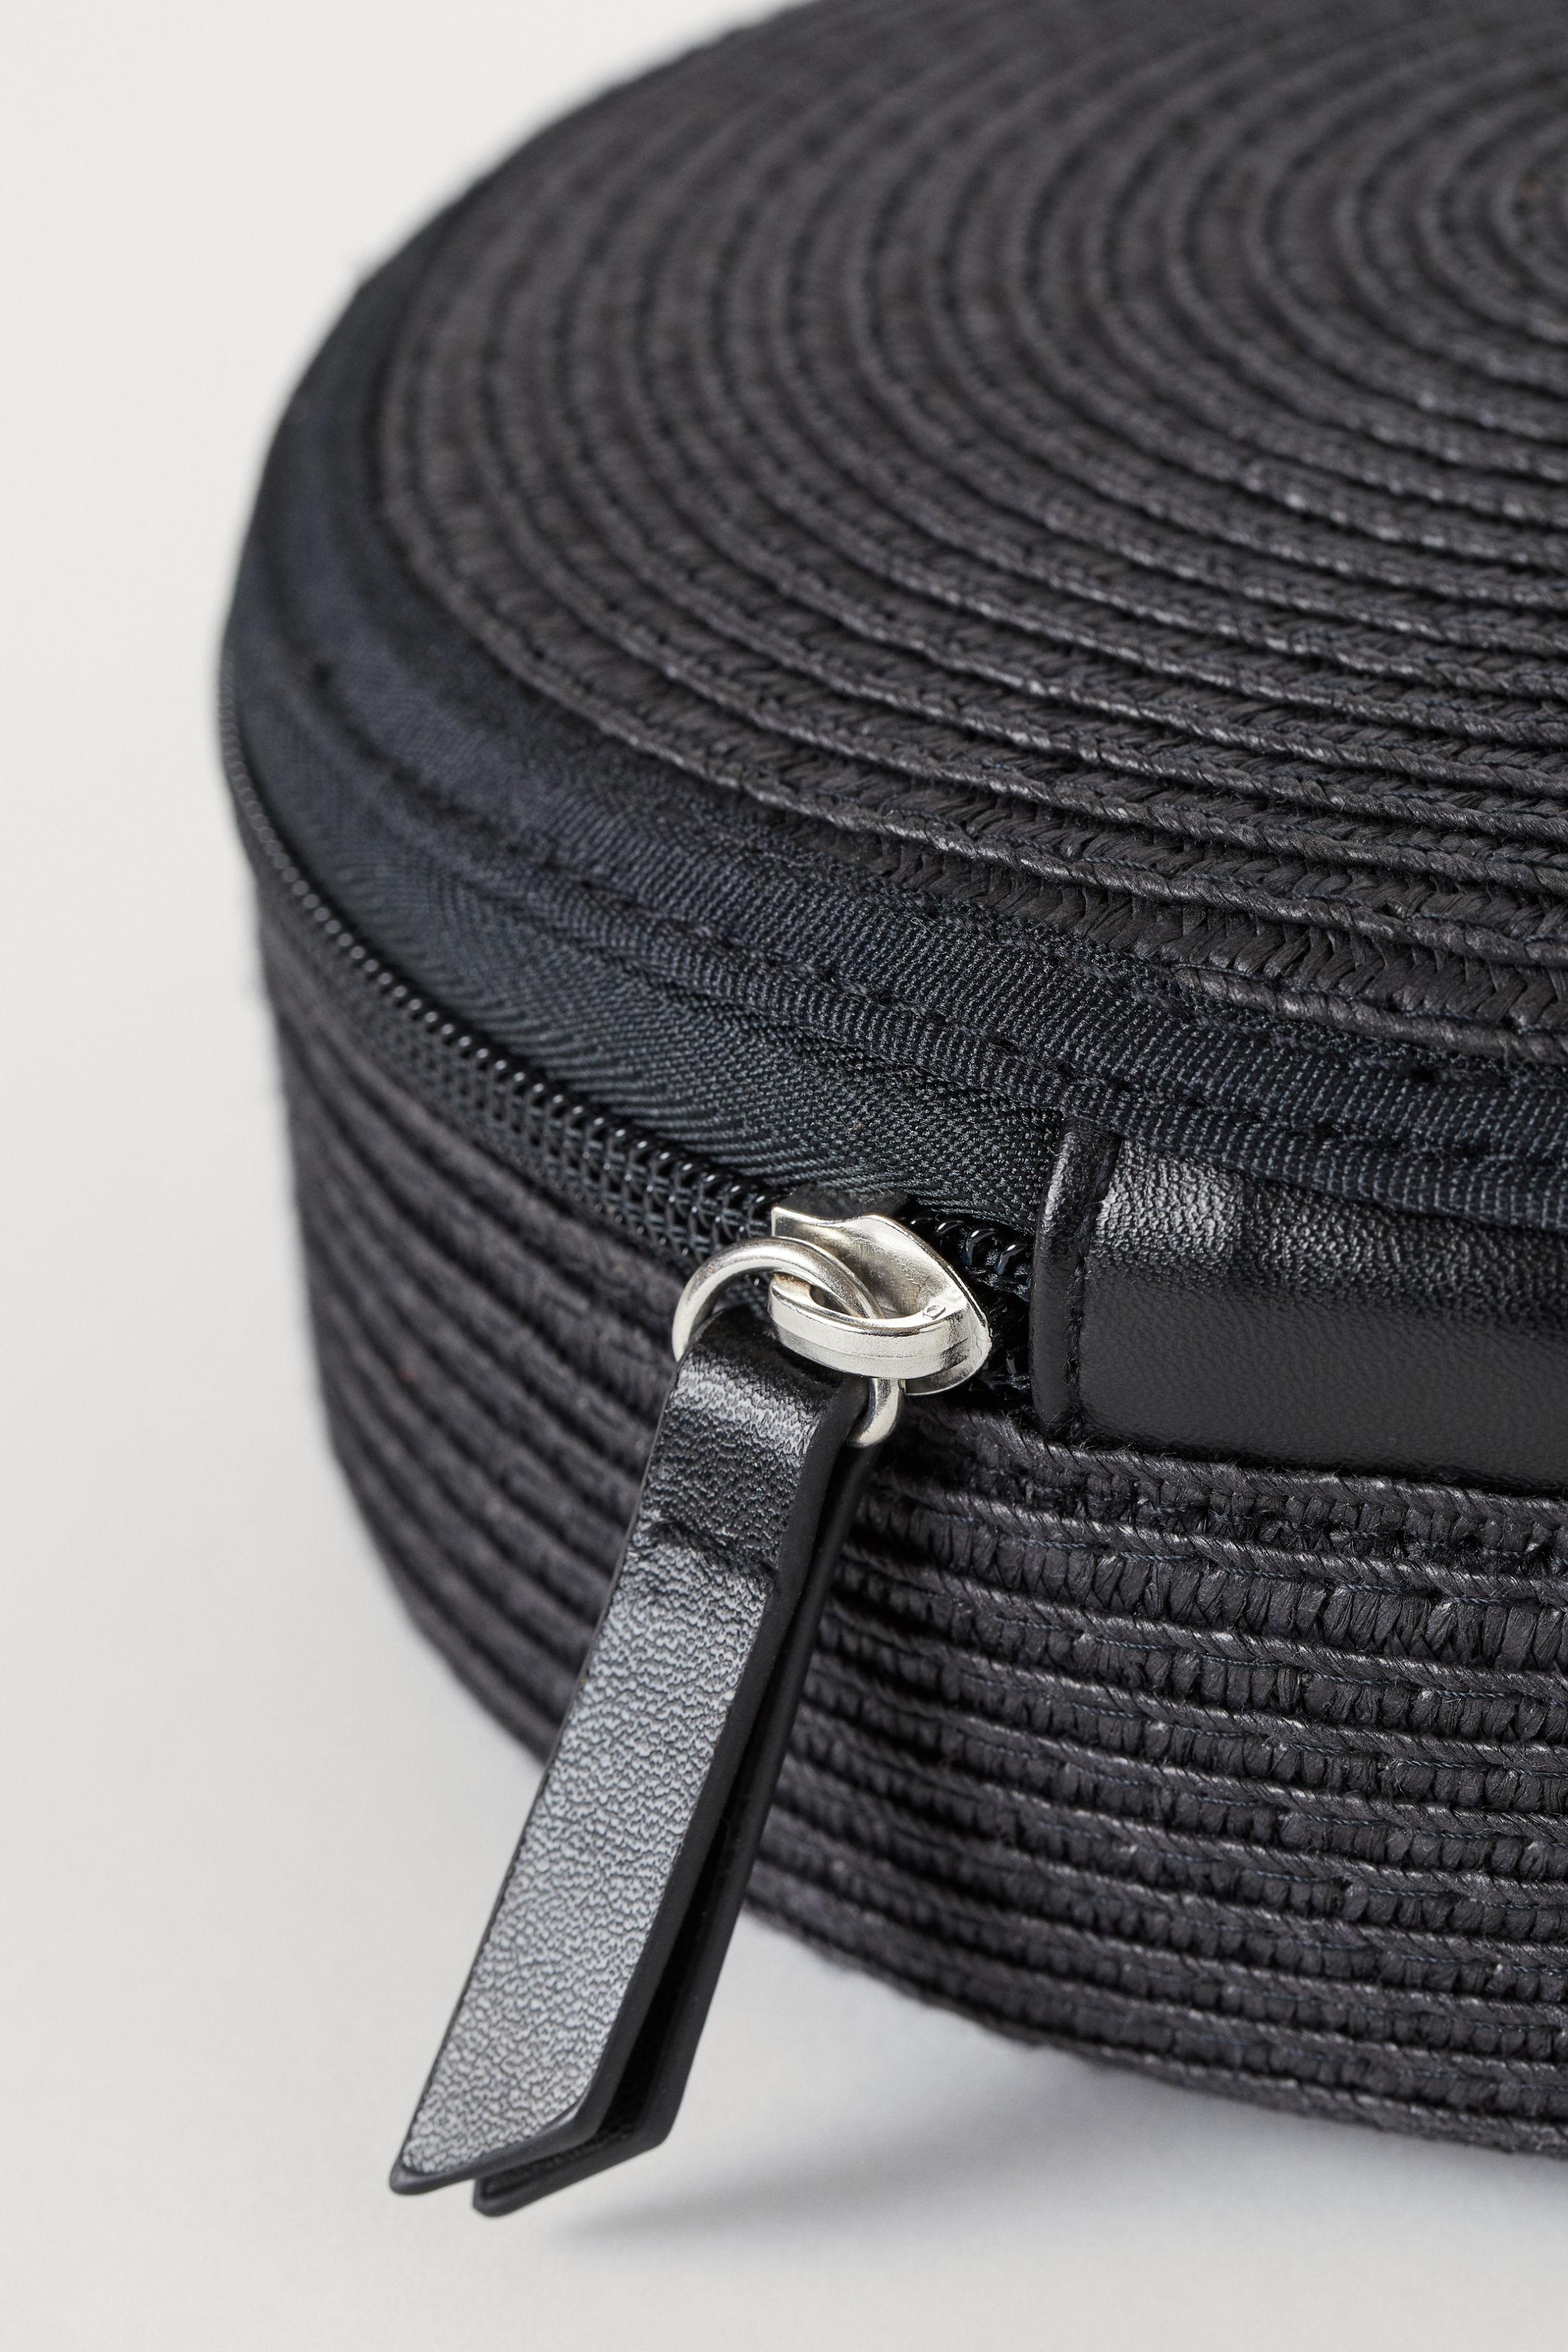 H&M Straw Shoulder Bag in Black - Lyst